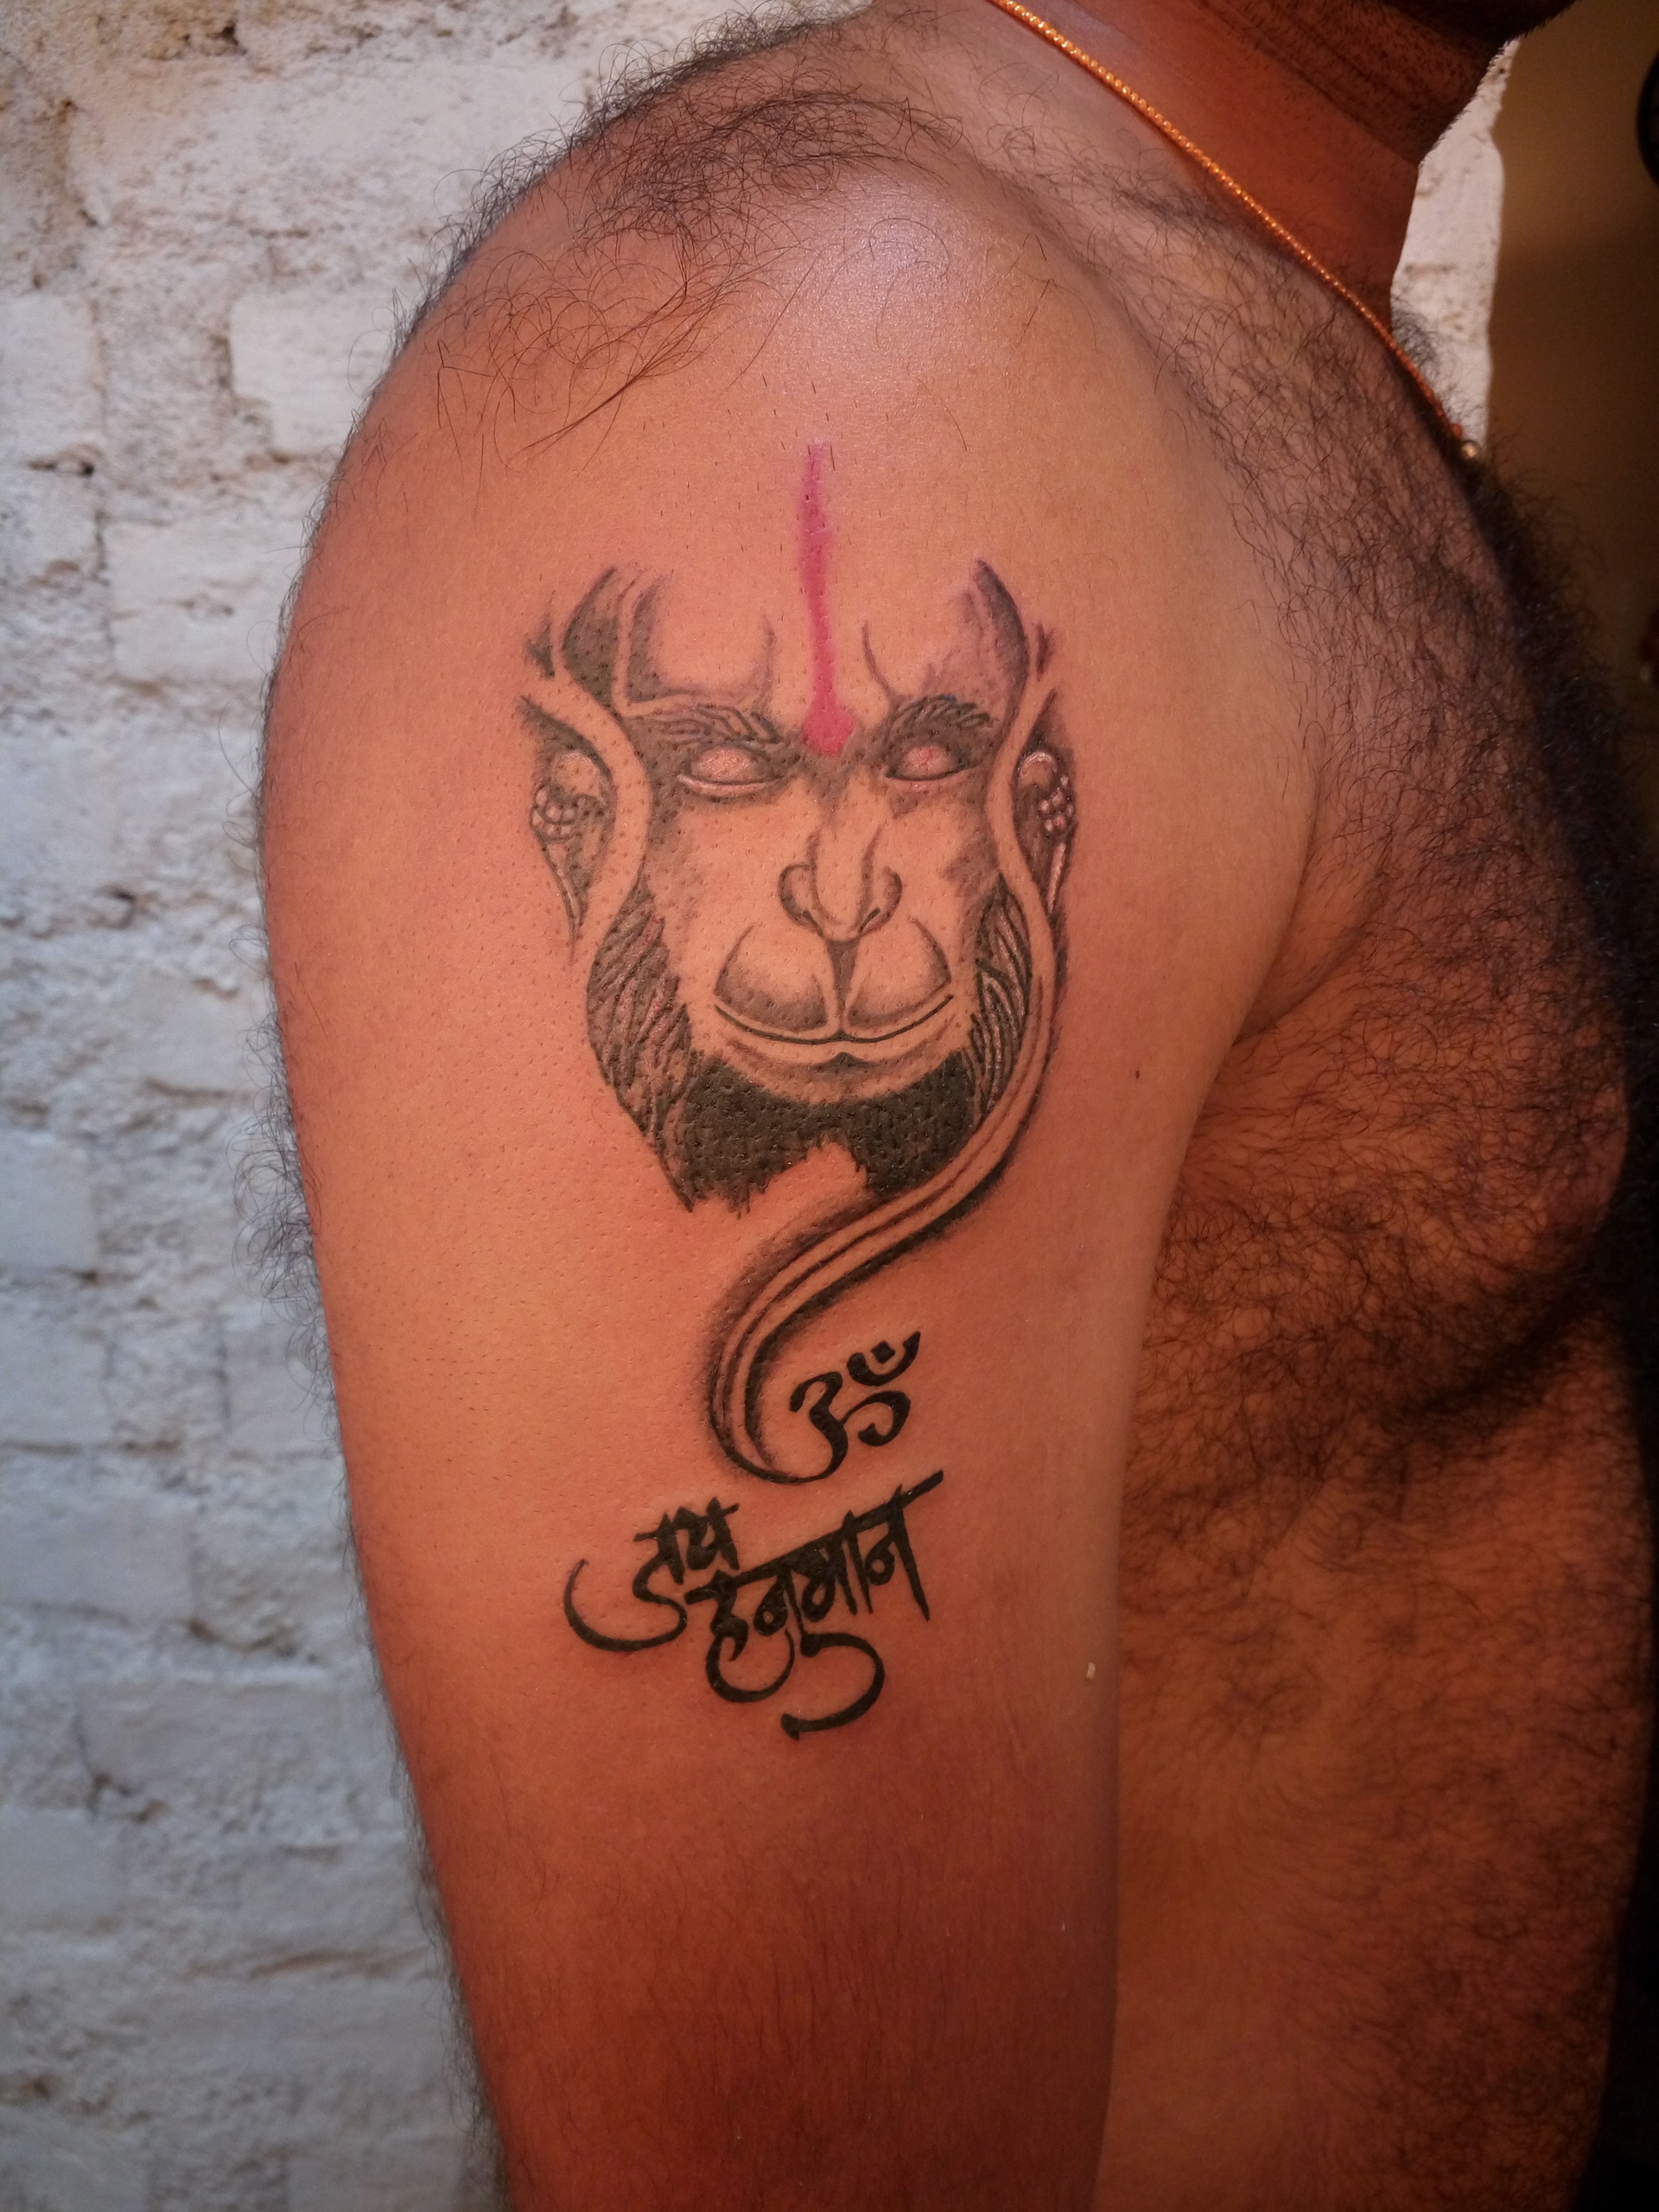 Mantra Tattoos | Sanskrit Mantra Tattoo Designs | Sanskrit Tattoo Designs